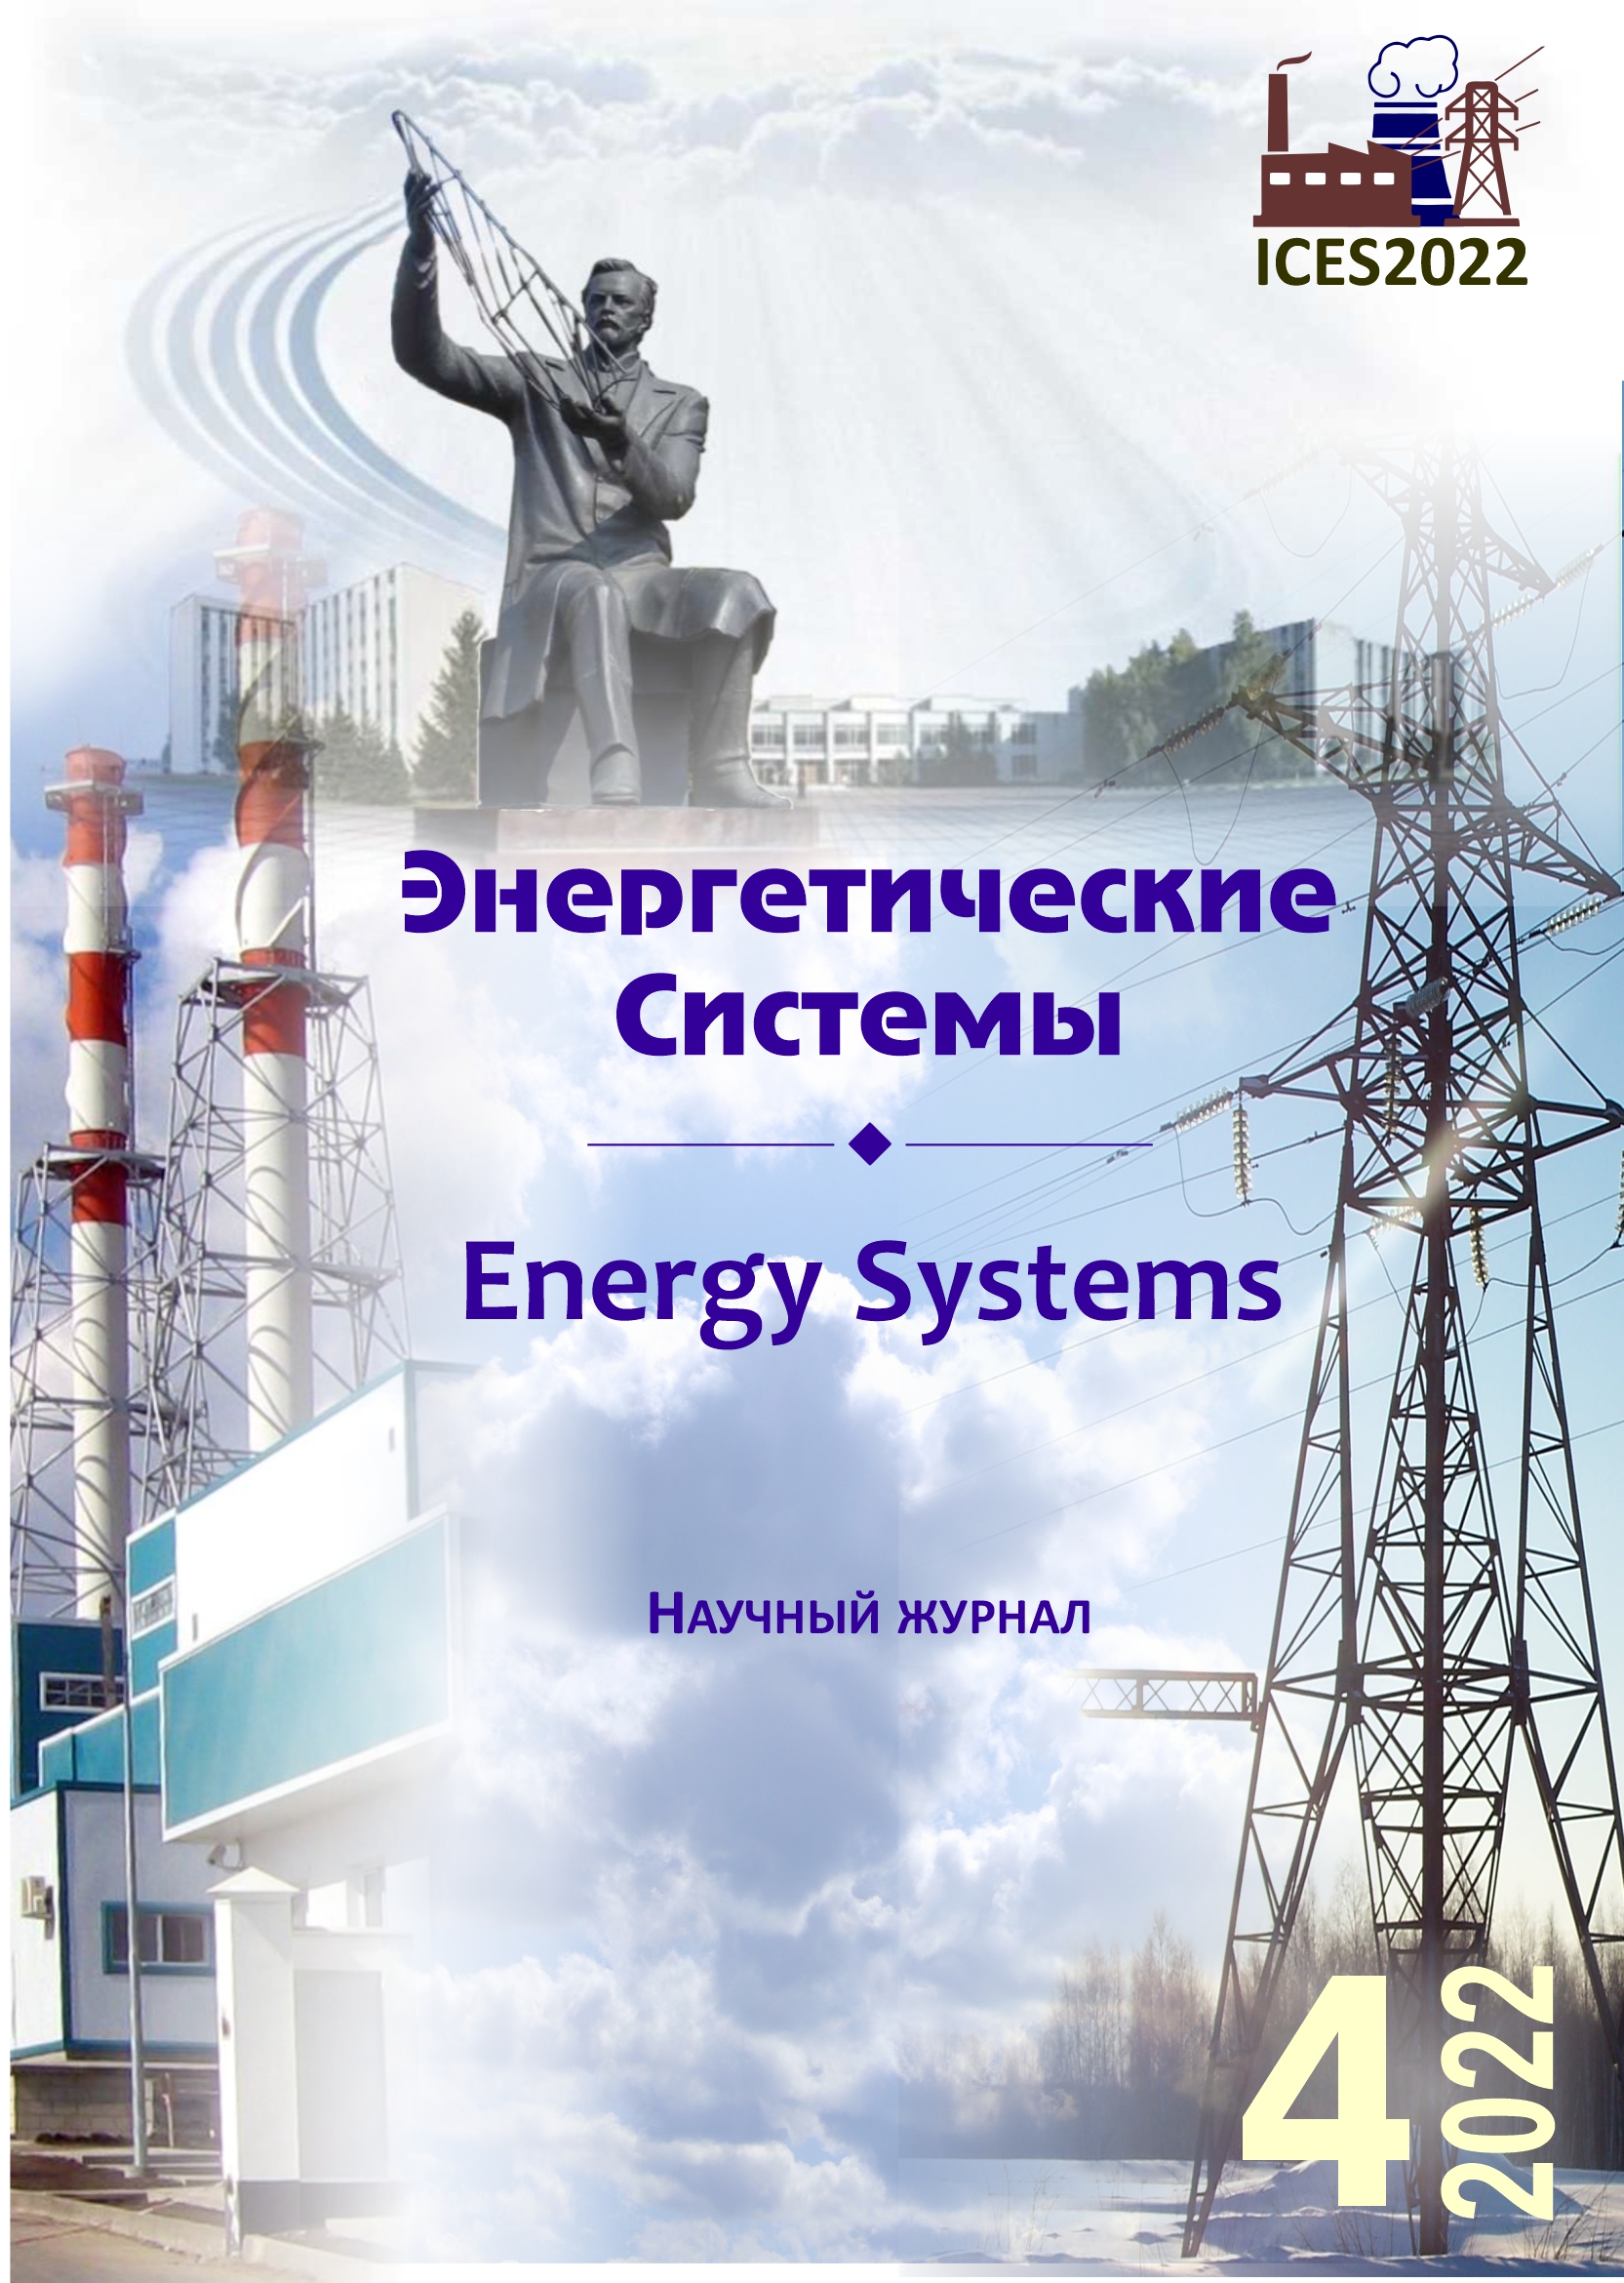 					Показать Том 7 № 4 (2022): VI международная научно-техническая конференция «Энергетические системы» (ICES-2022)
				